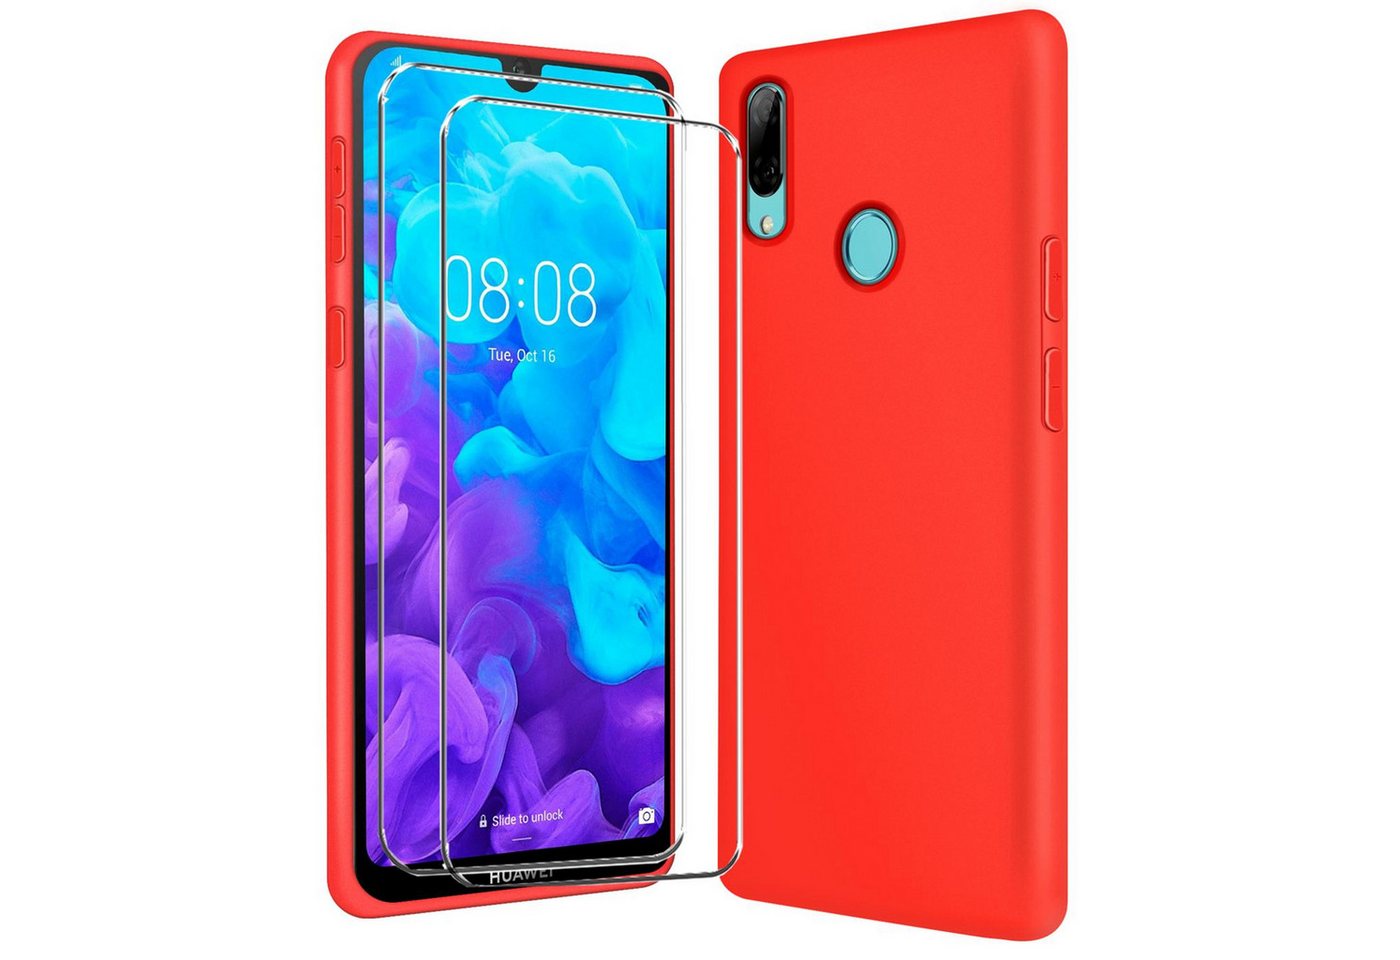 CoolGadget Handyhülle Rot als 2in1 Schutz Cover Set für das Huawei P Smart 2019 6,21 Zoll, 2x Glas Display Schutz Folie + 1x TPU Case Hülle für P Smart 2019 von CoolGadget